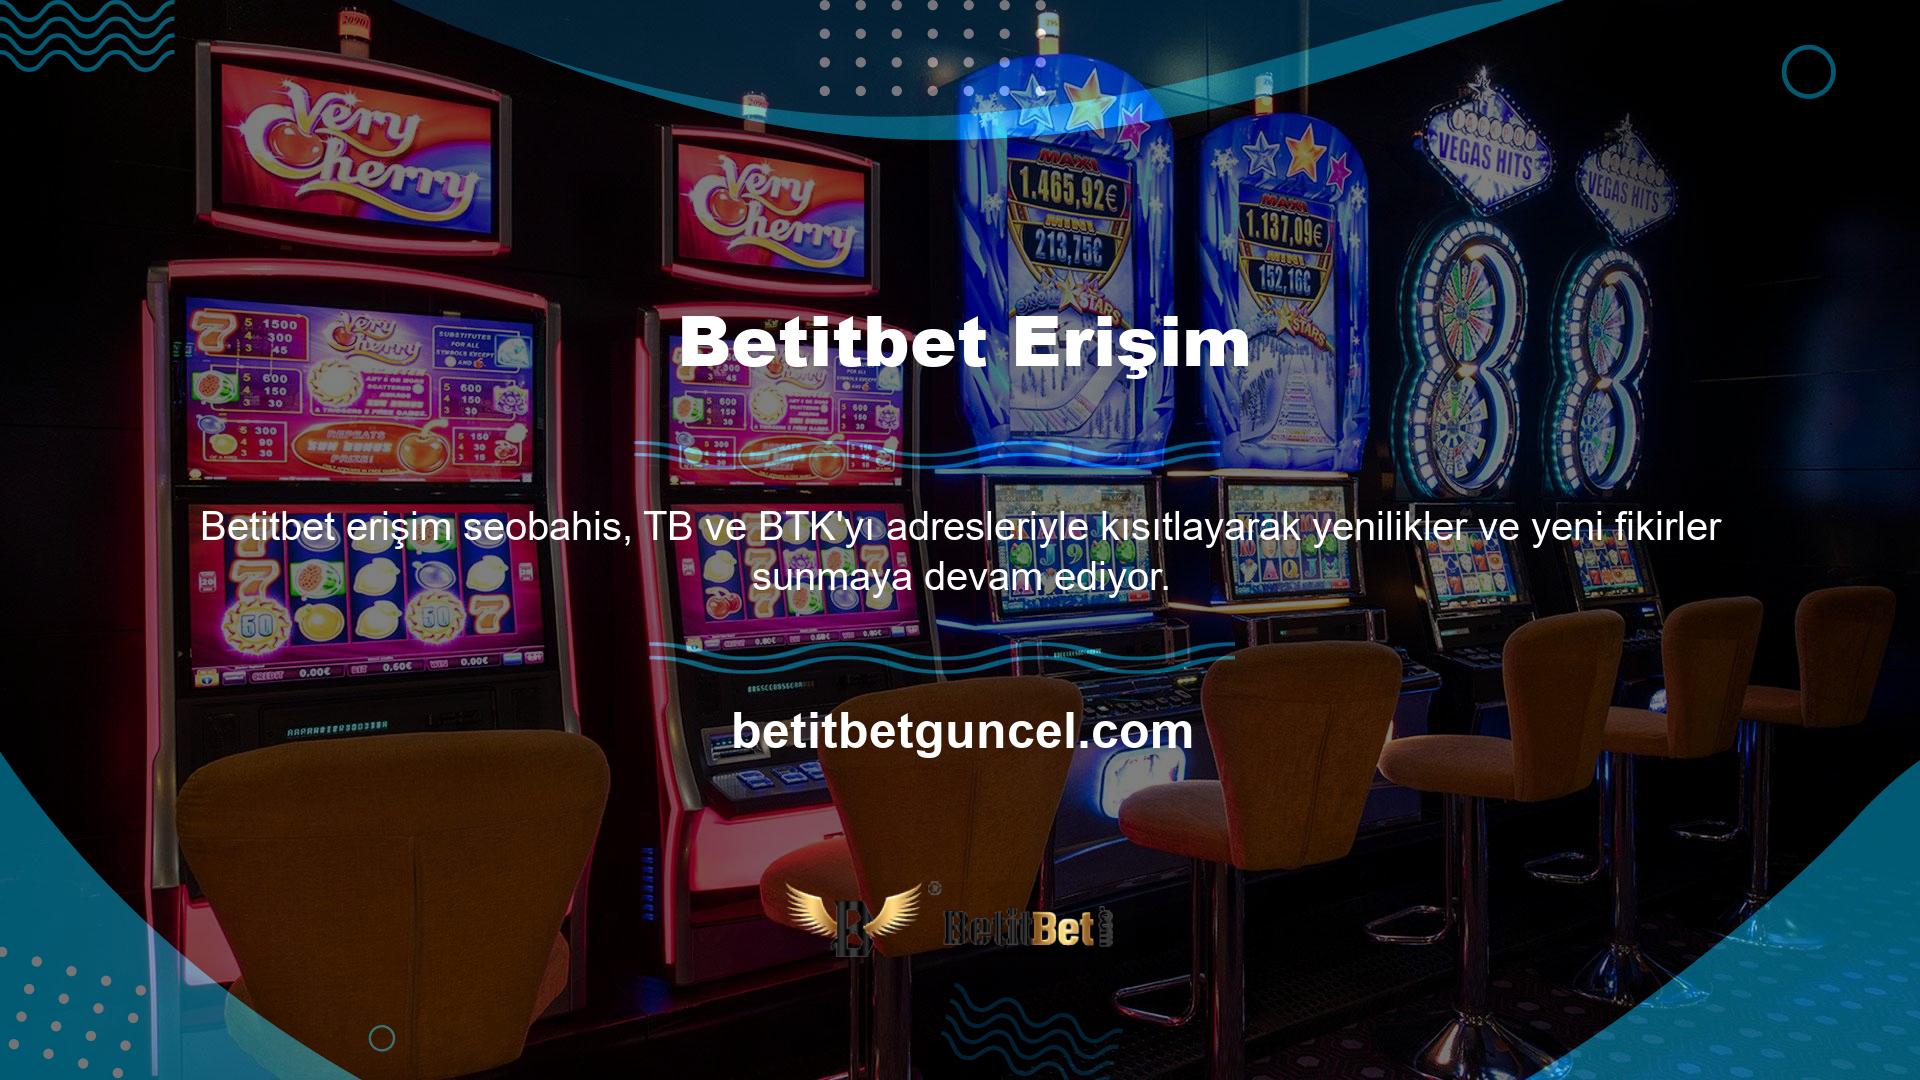 Türkiye'deki çevrimiçi Casino sitelerinin yaygınlığı, bu siteleri daha fazla insanın kullandığı kayda değer bir artışla sonuçlandı